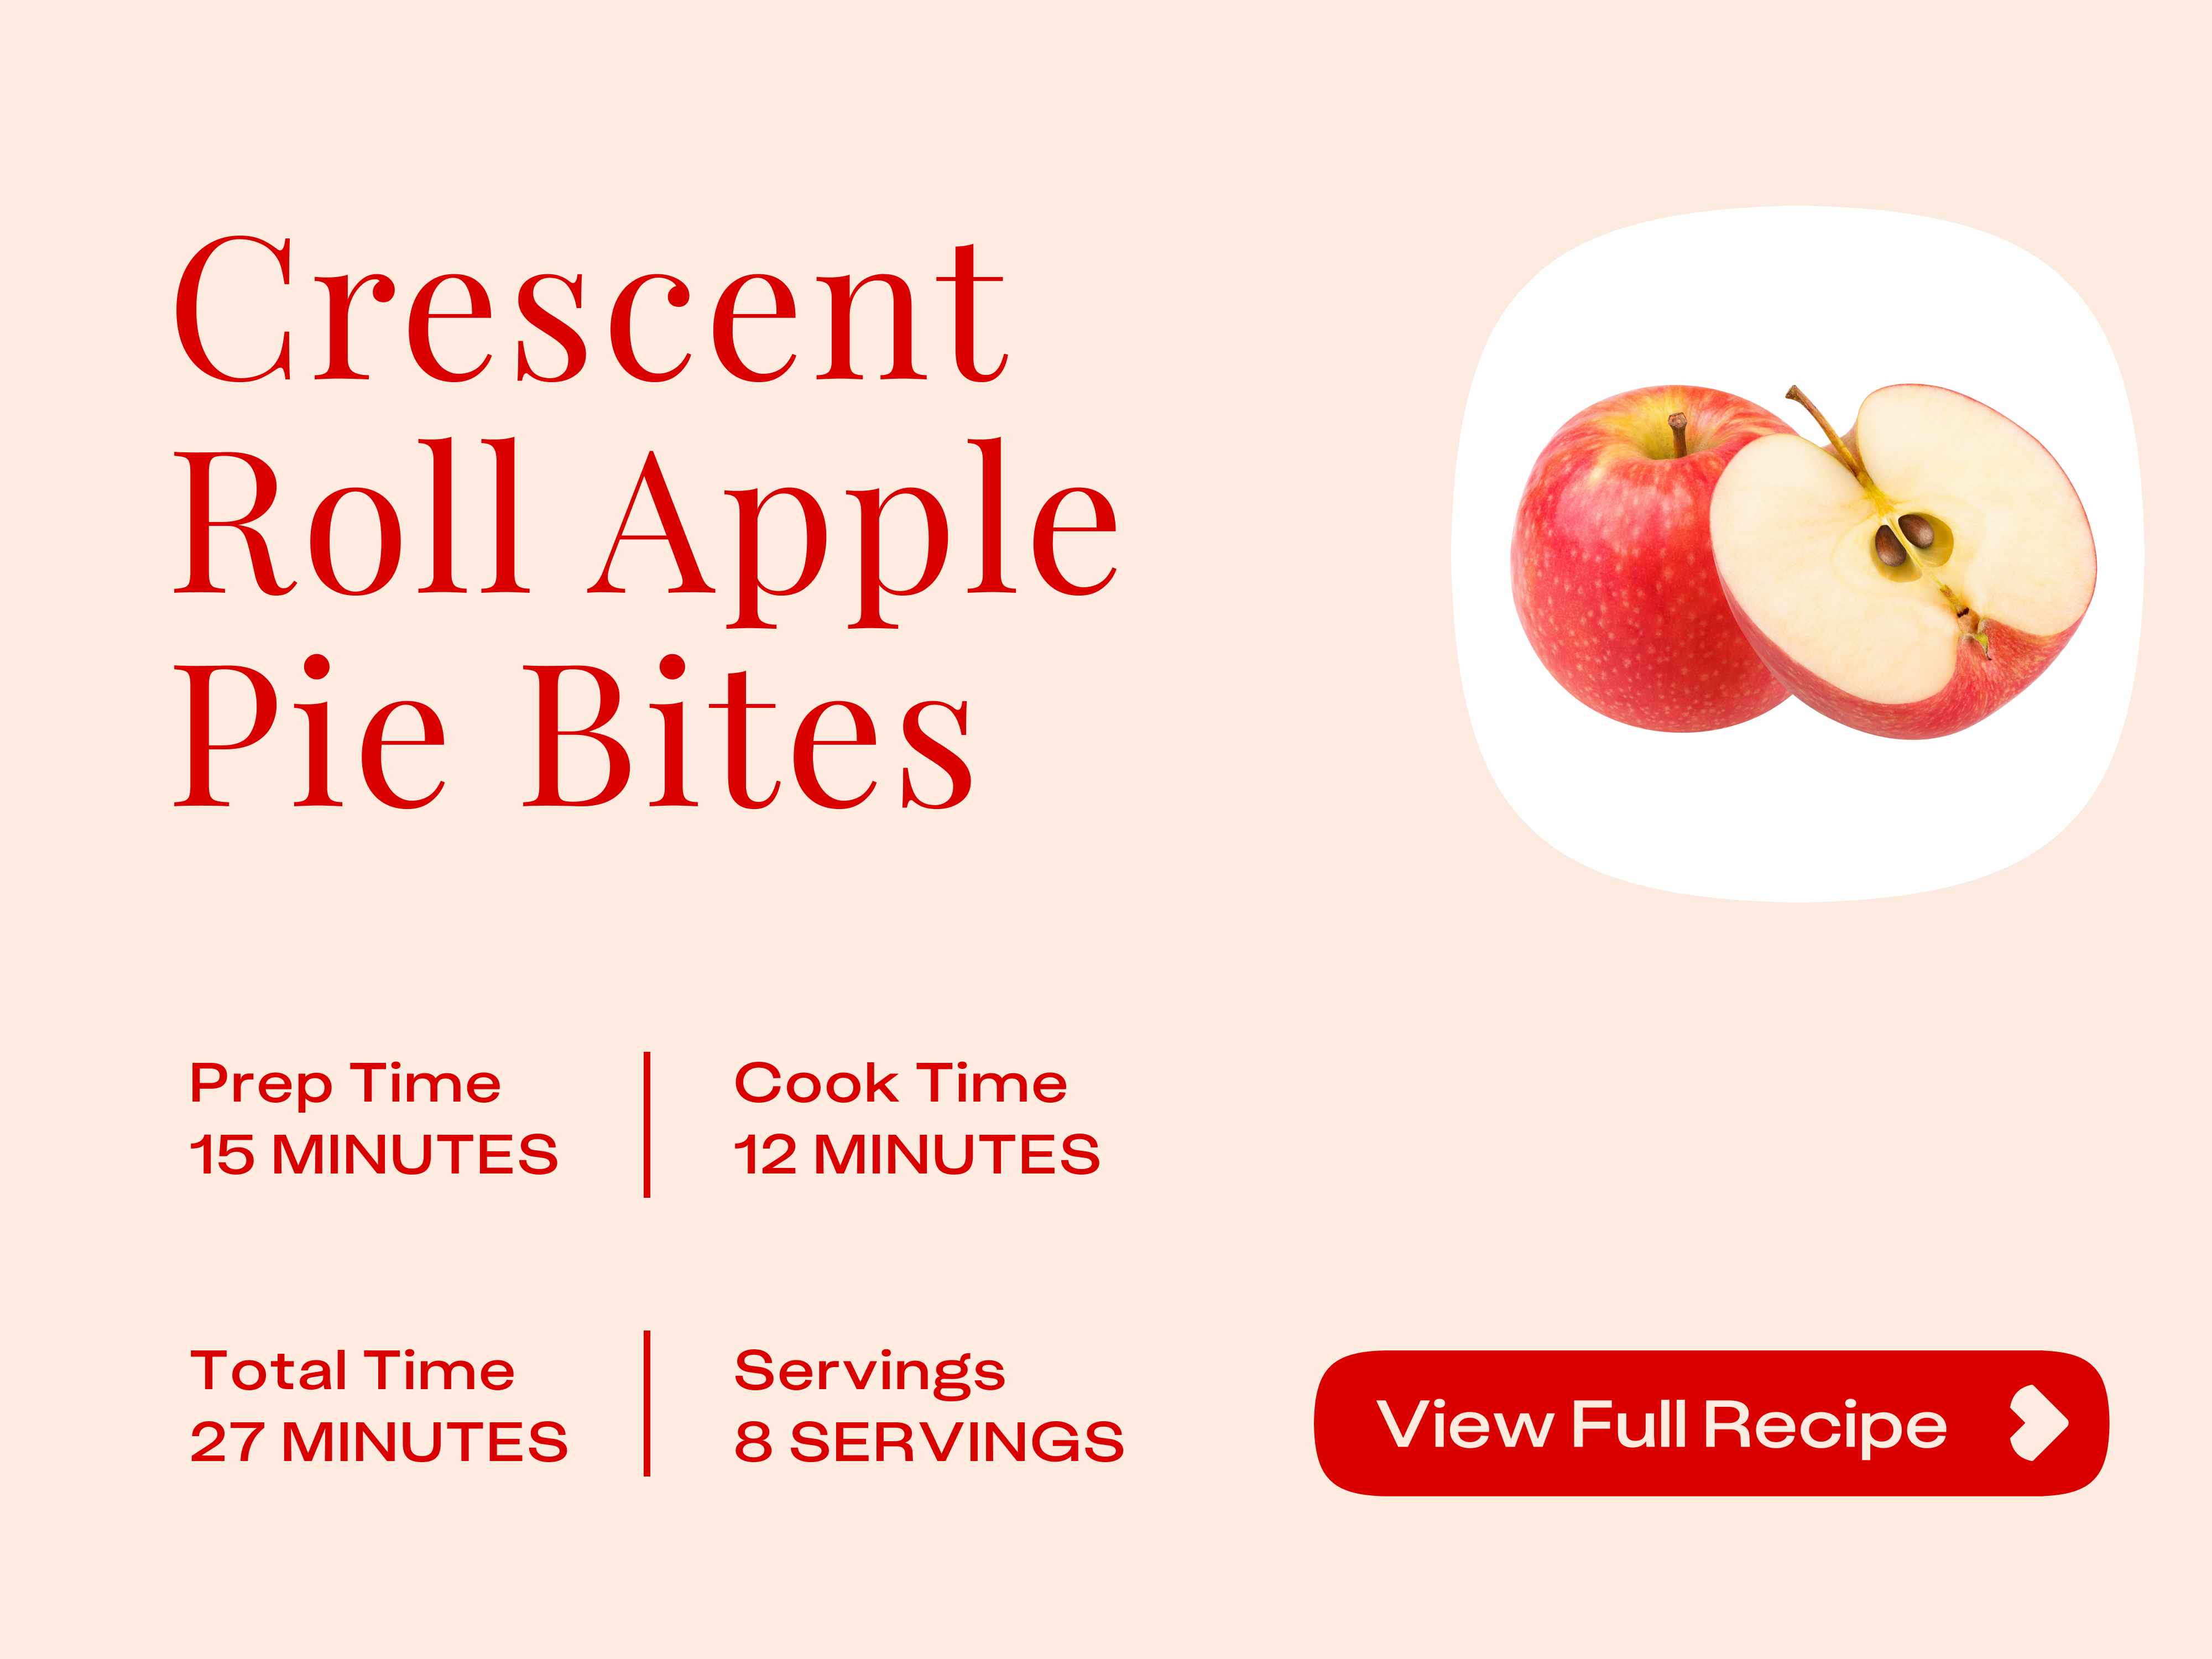 Recipe card for Apple pie bites